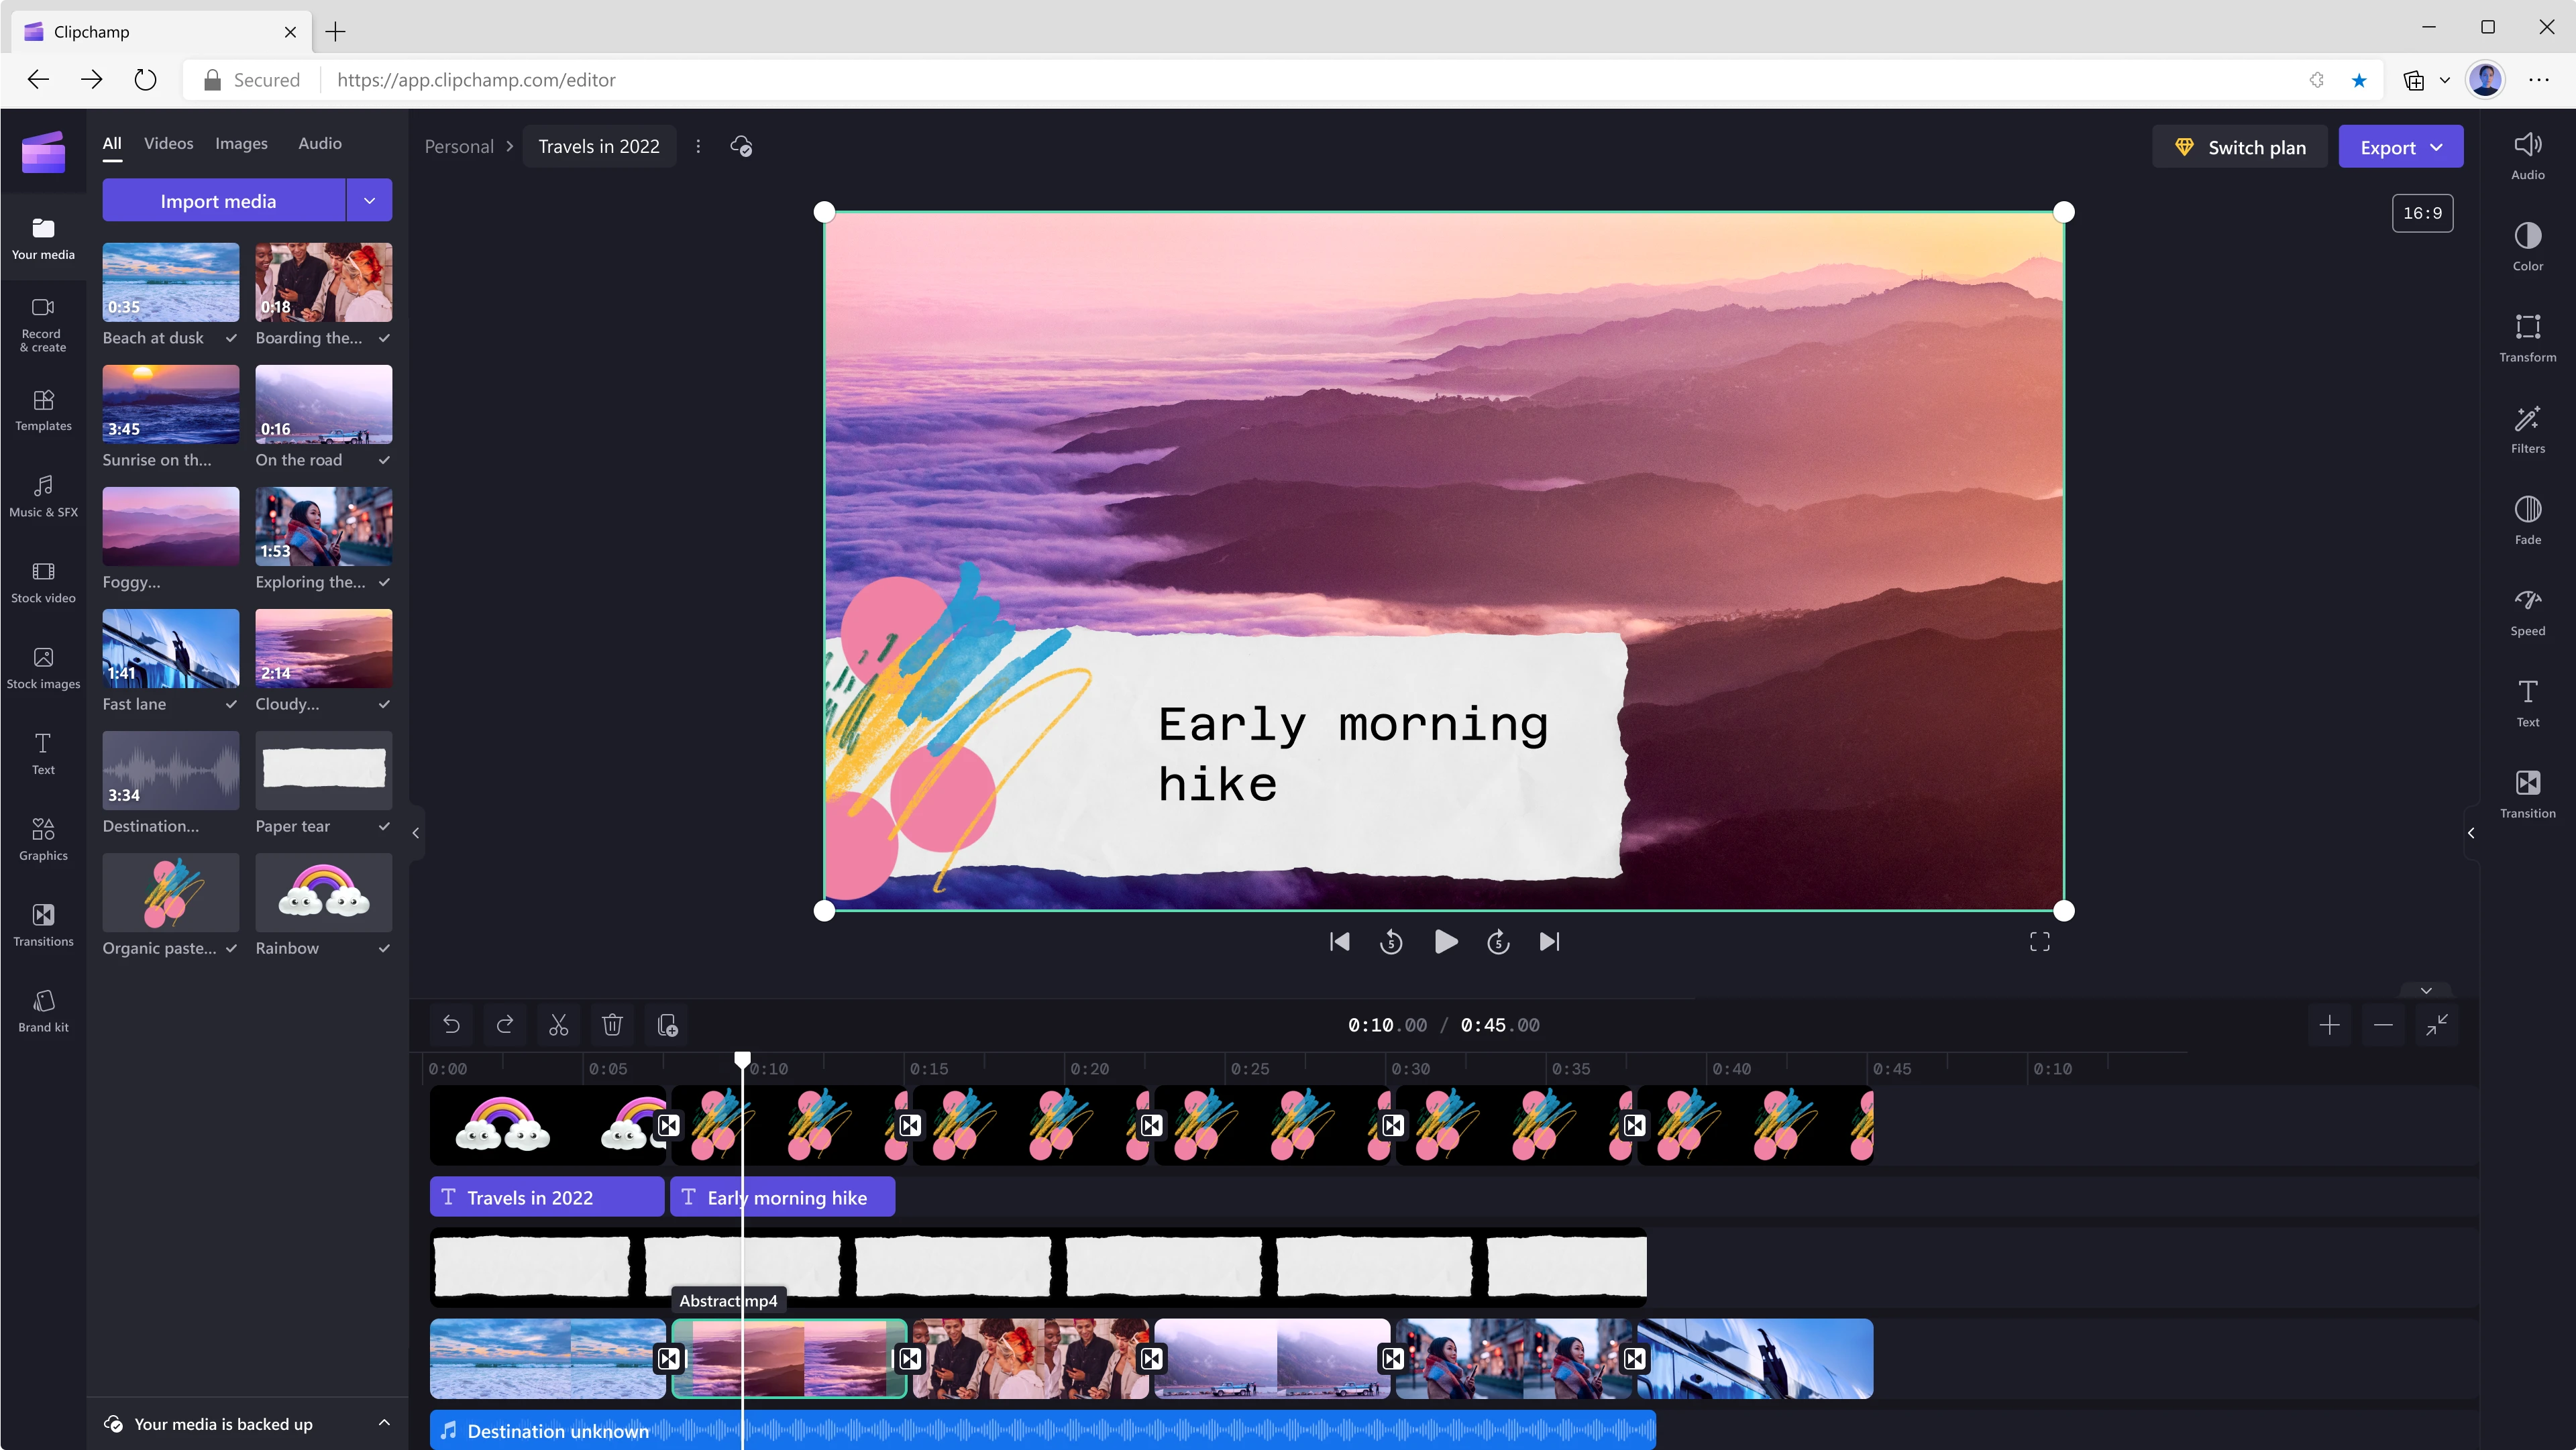 Un usuario edita un video de 45 segundos utilizando Clipchamp. El fotograma en los 10 segundos muestra montañas y nubes en tonos violeta, con el texto 